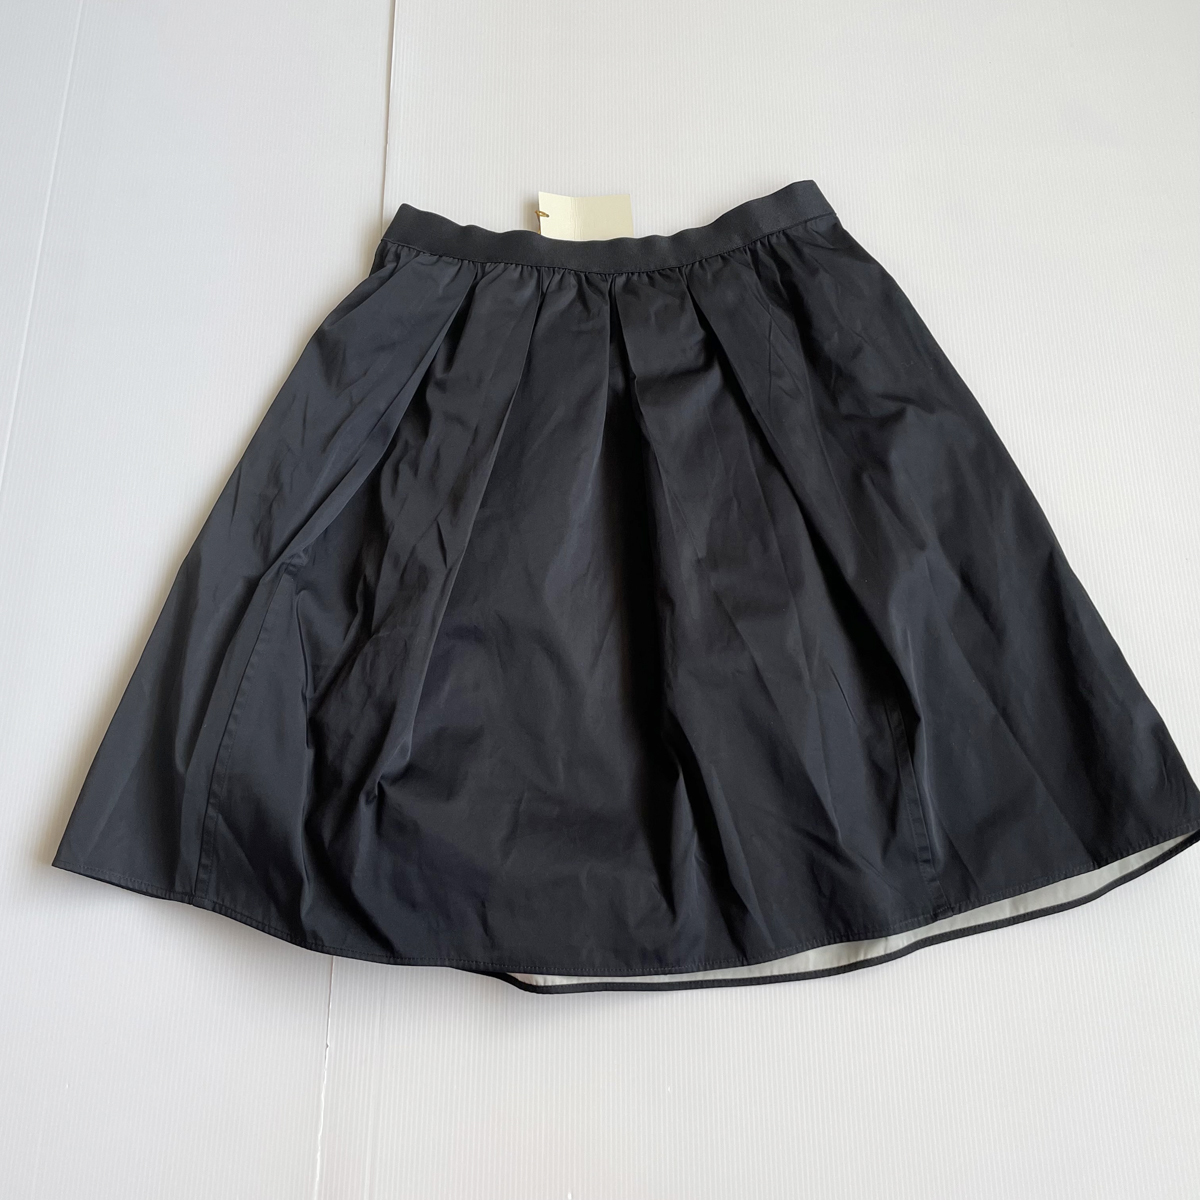  новый товар канава .rudaga Ran teGALLARDAGALANTE обычная цена 18690 иен плиссировать flair юбка размер 1